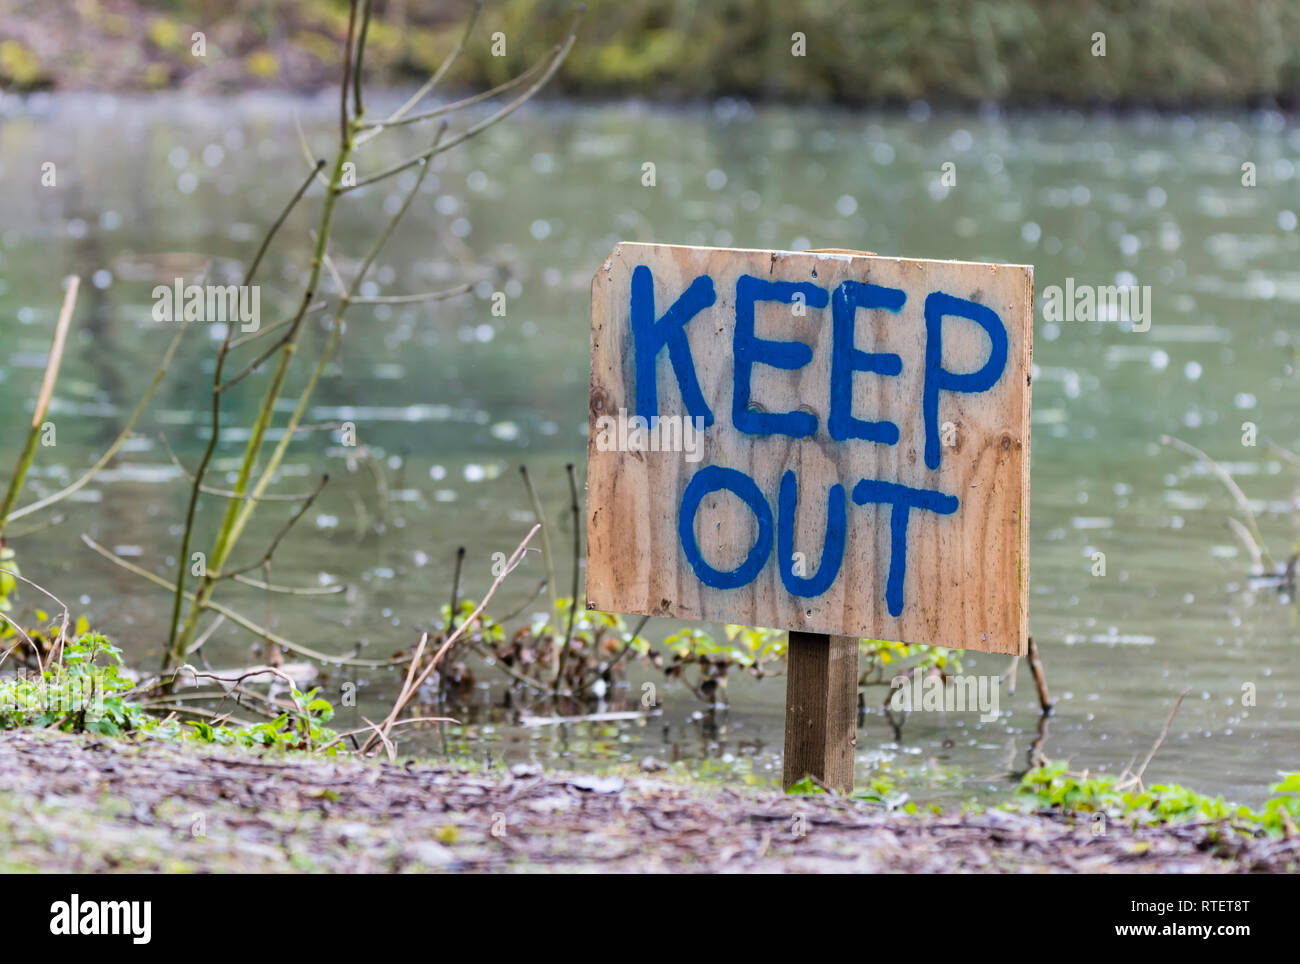 Halten Sie sich abmelden Hand geschrieben auf ein hölzernes Schild in den Boden durch einen See stecken. Stockfoto